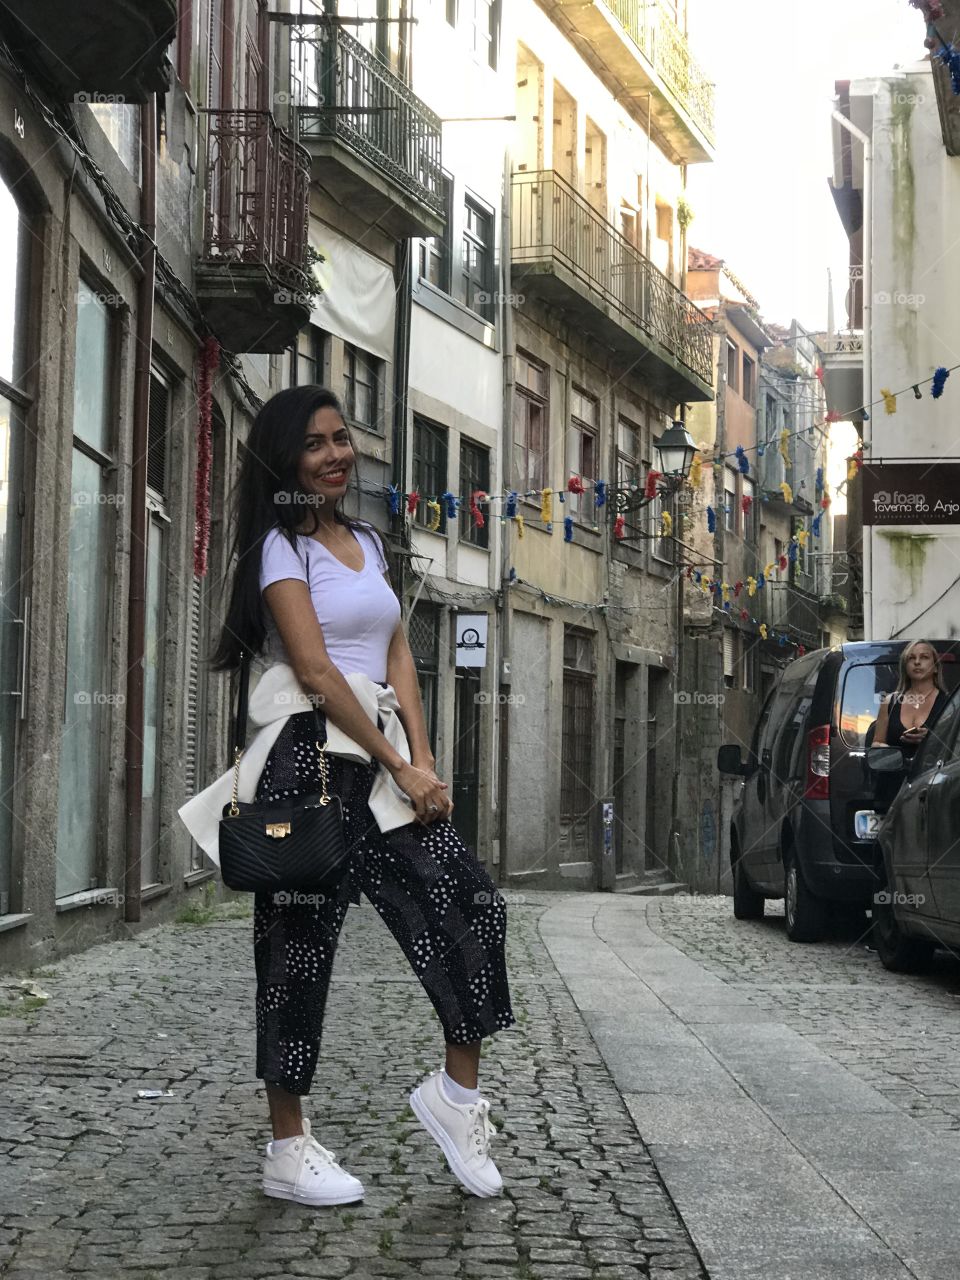 The beauties of Porto